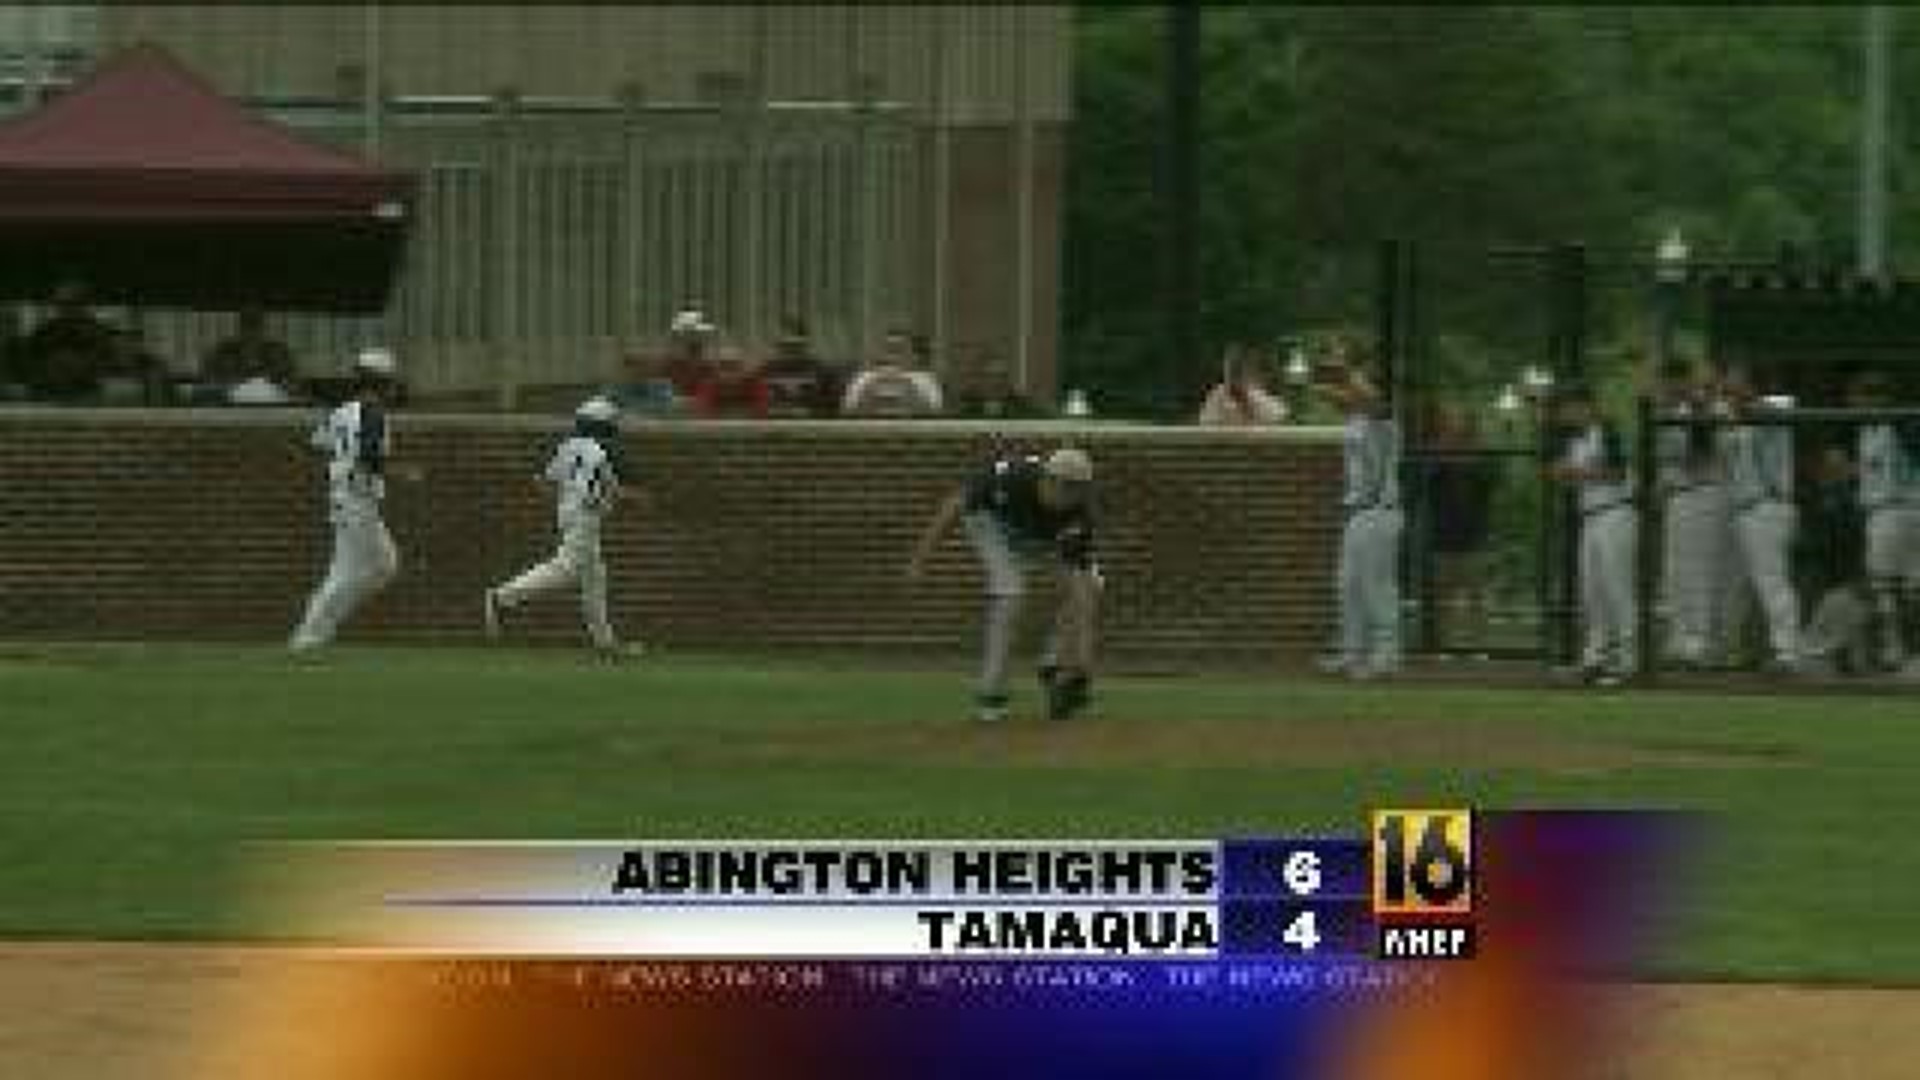 Abington Heights vs. Tamaqua